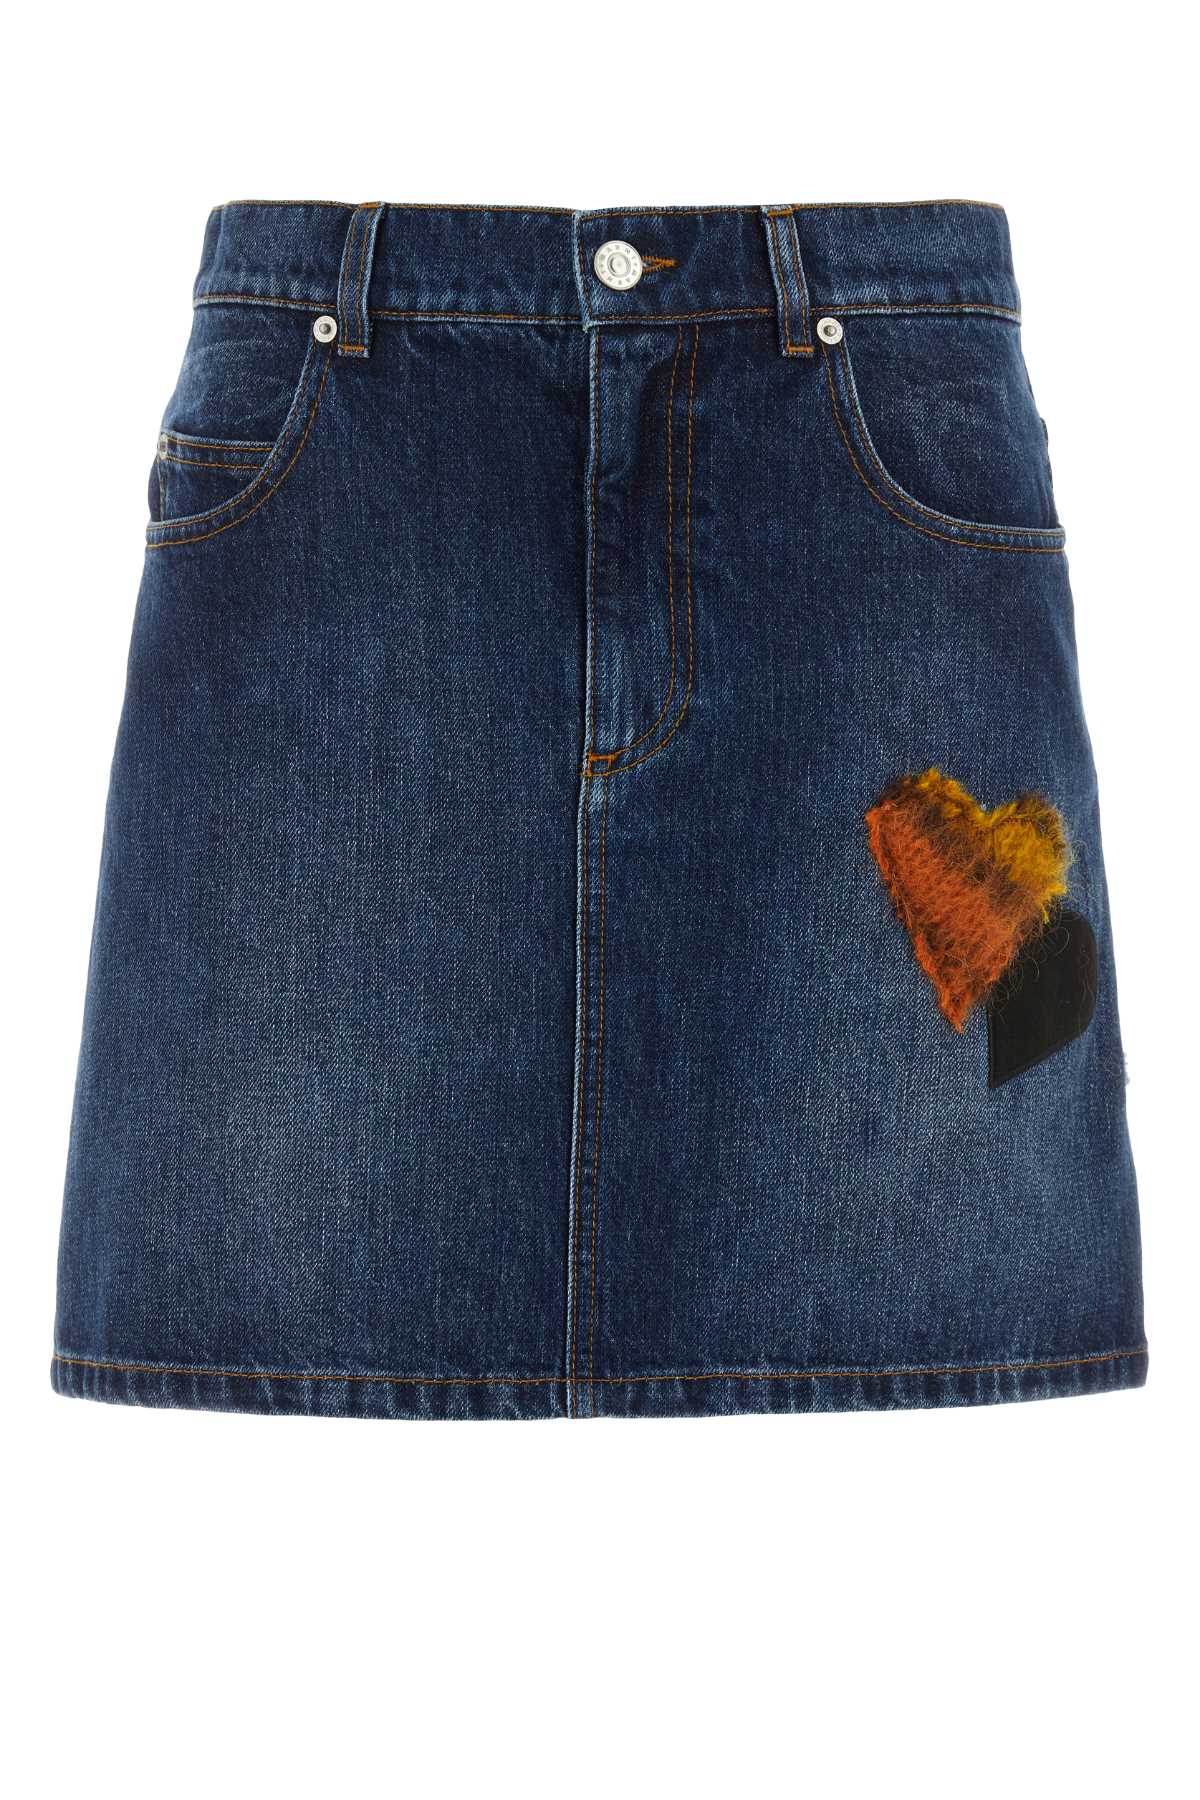 Blue Denim Mini Skirt